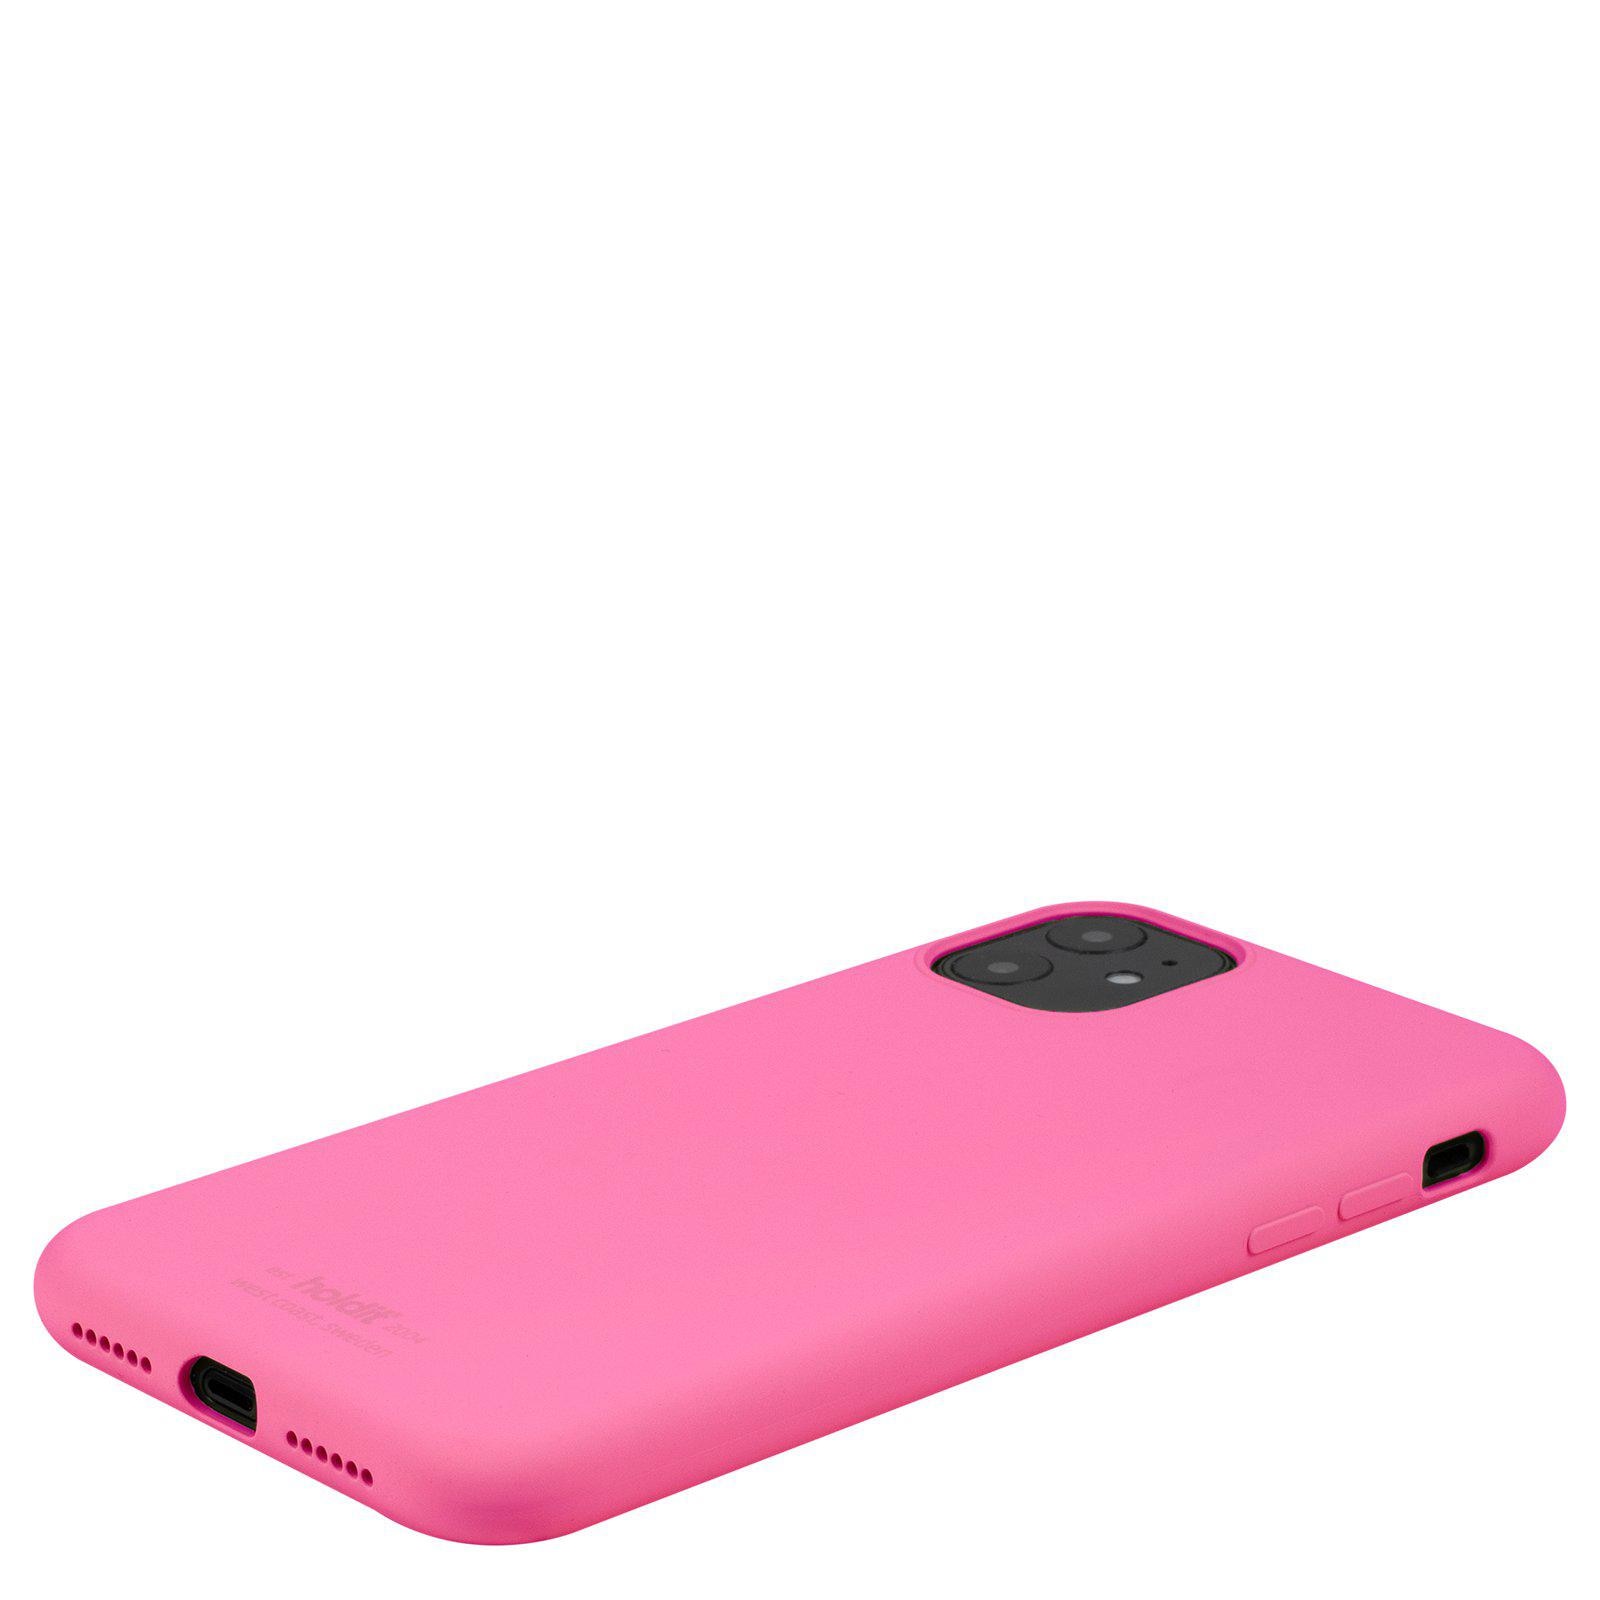 Coque en silicone iPhone 11, Bright Pink